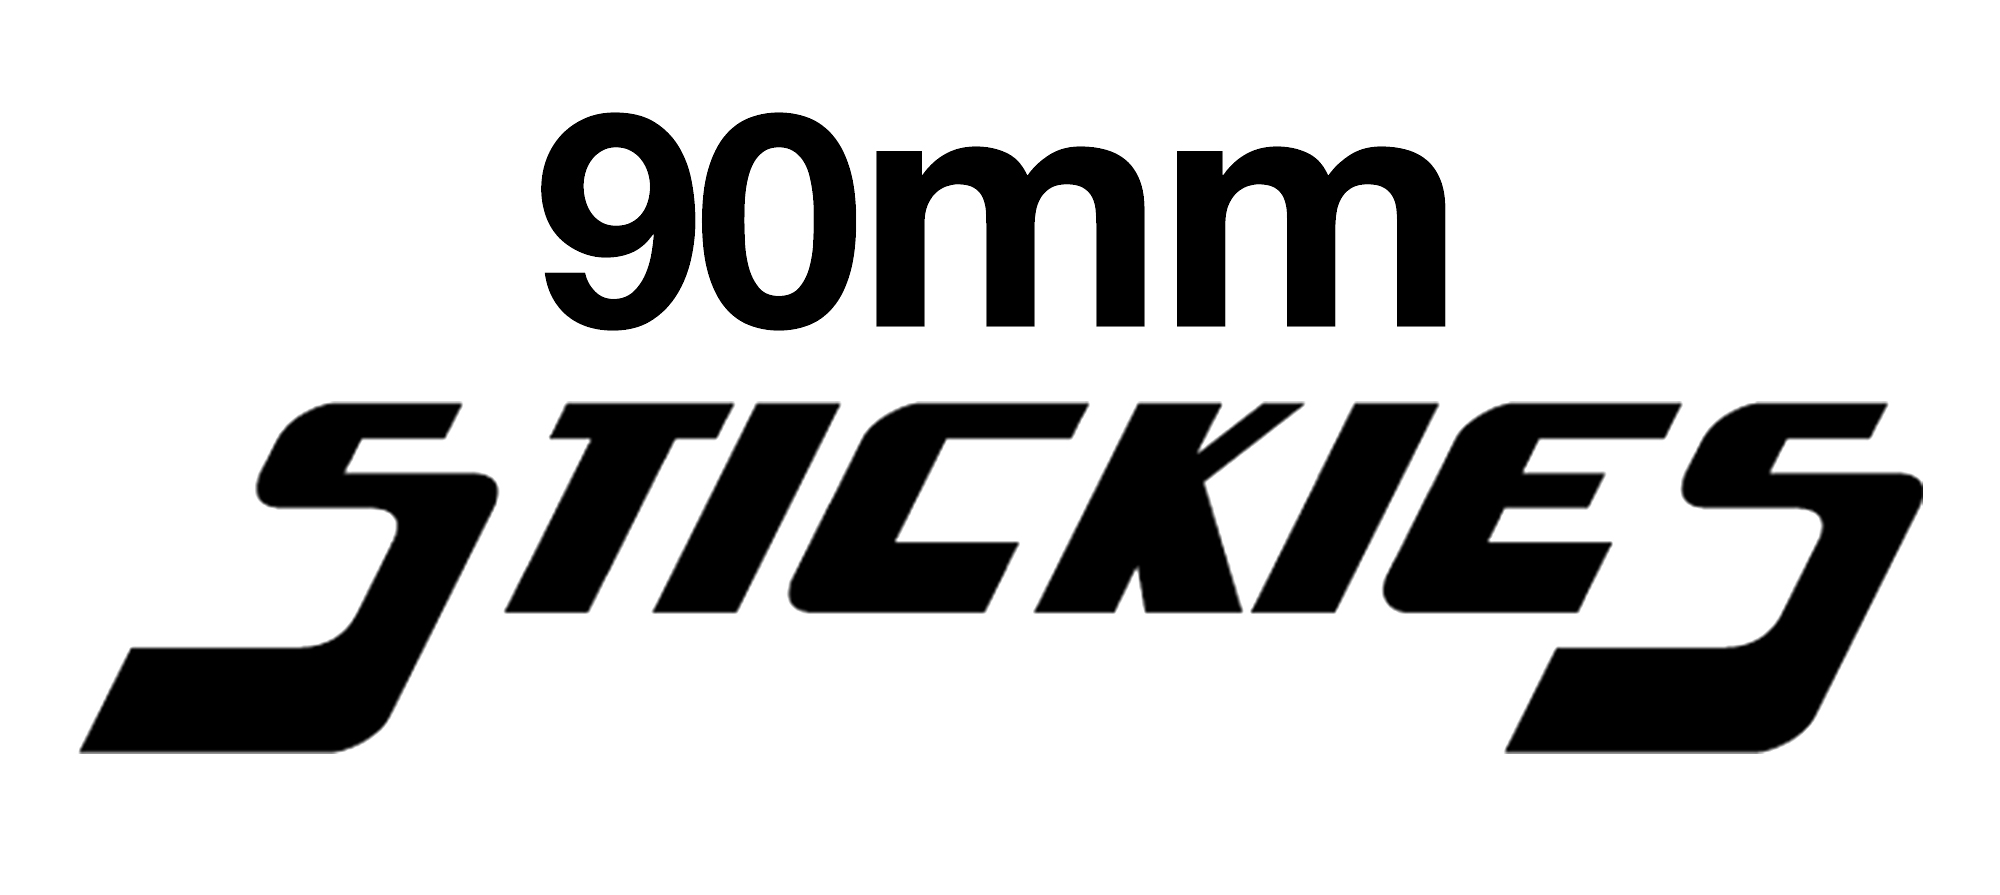 90mm STICKIES Longboard Wheels (+£10)